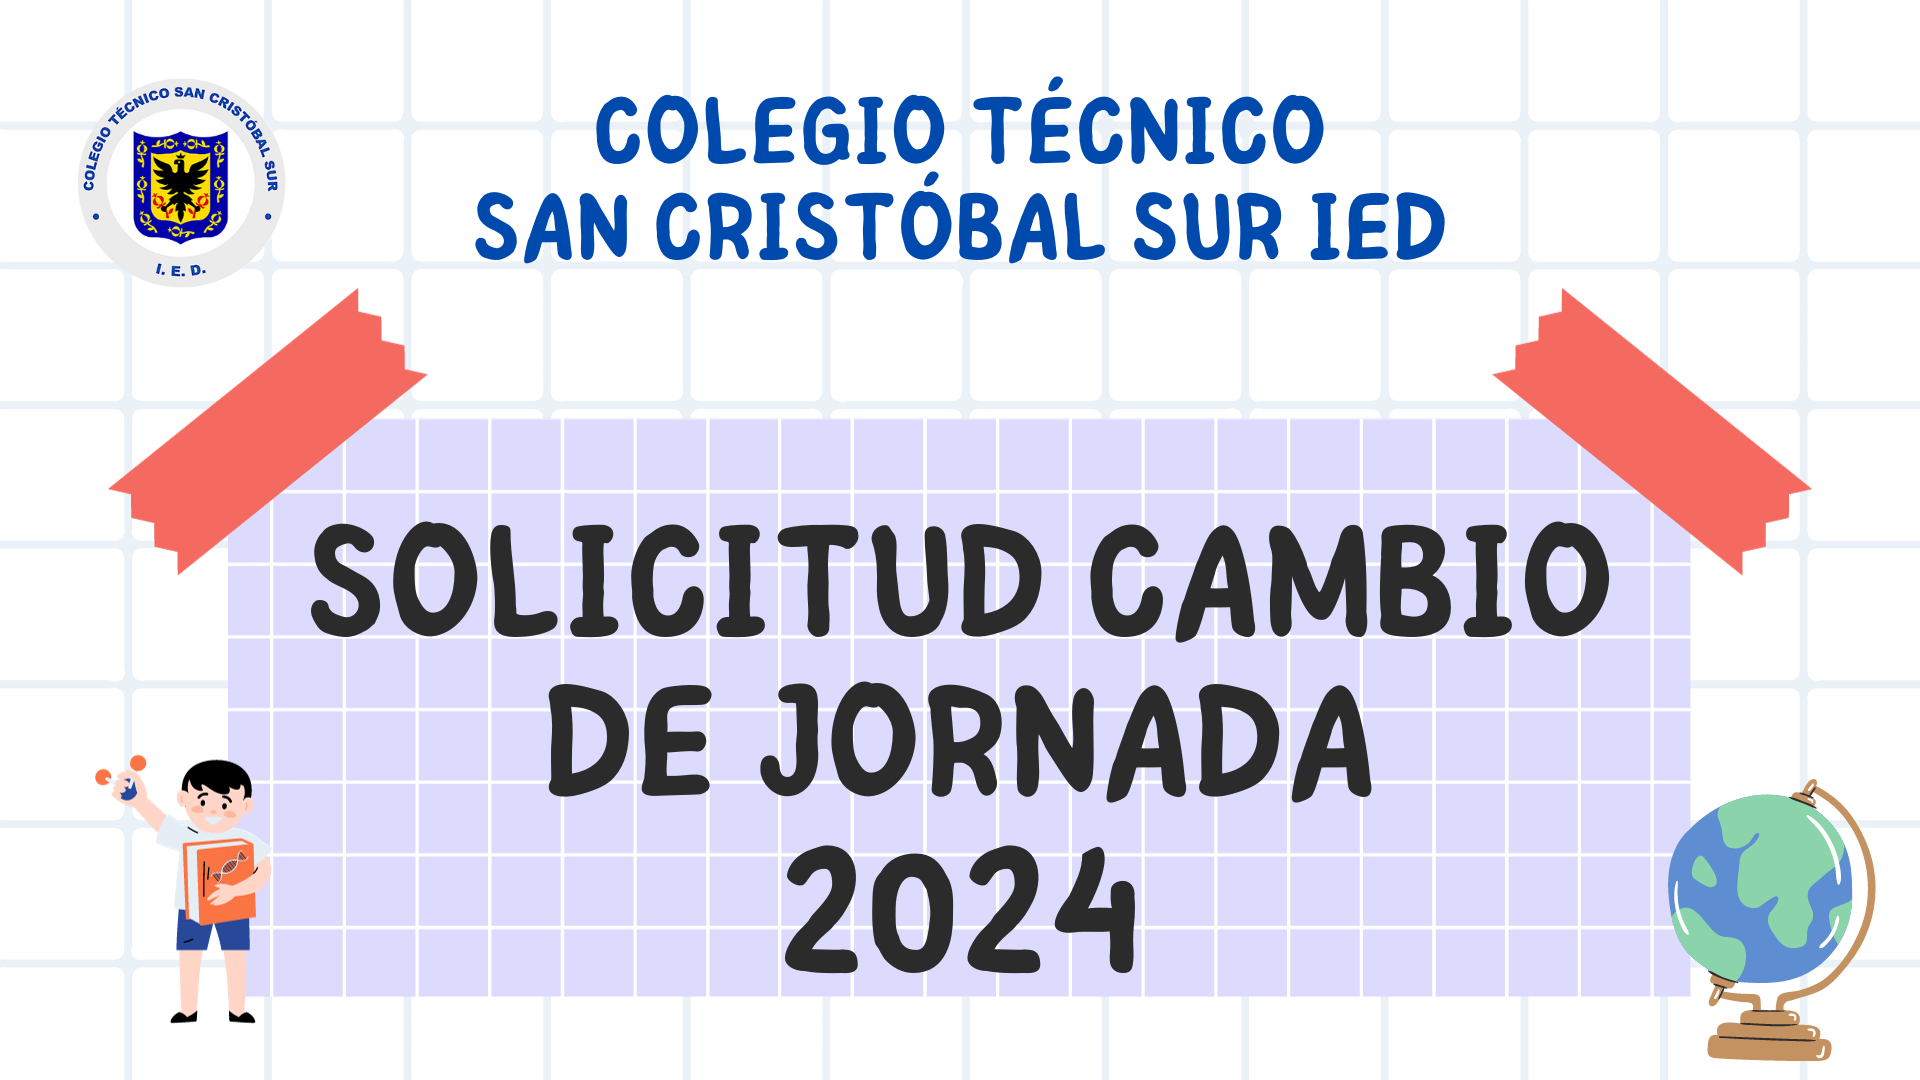 SOLICITUD CAMBIO DE JORNADA 2024